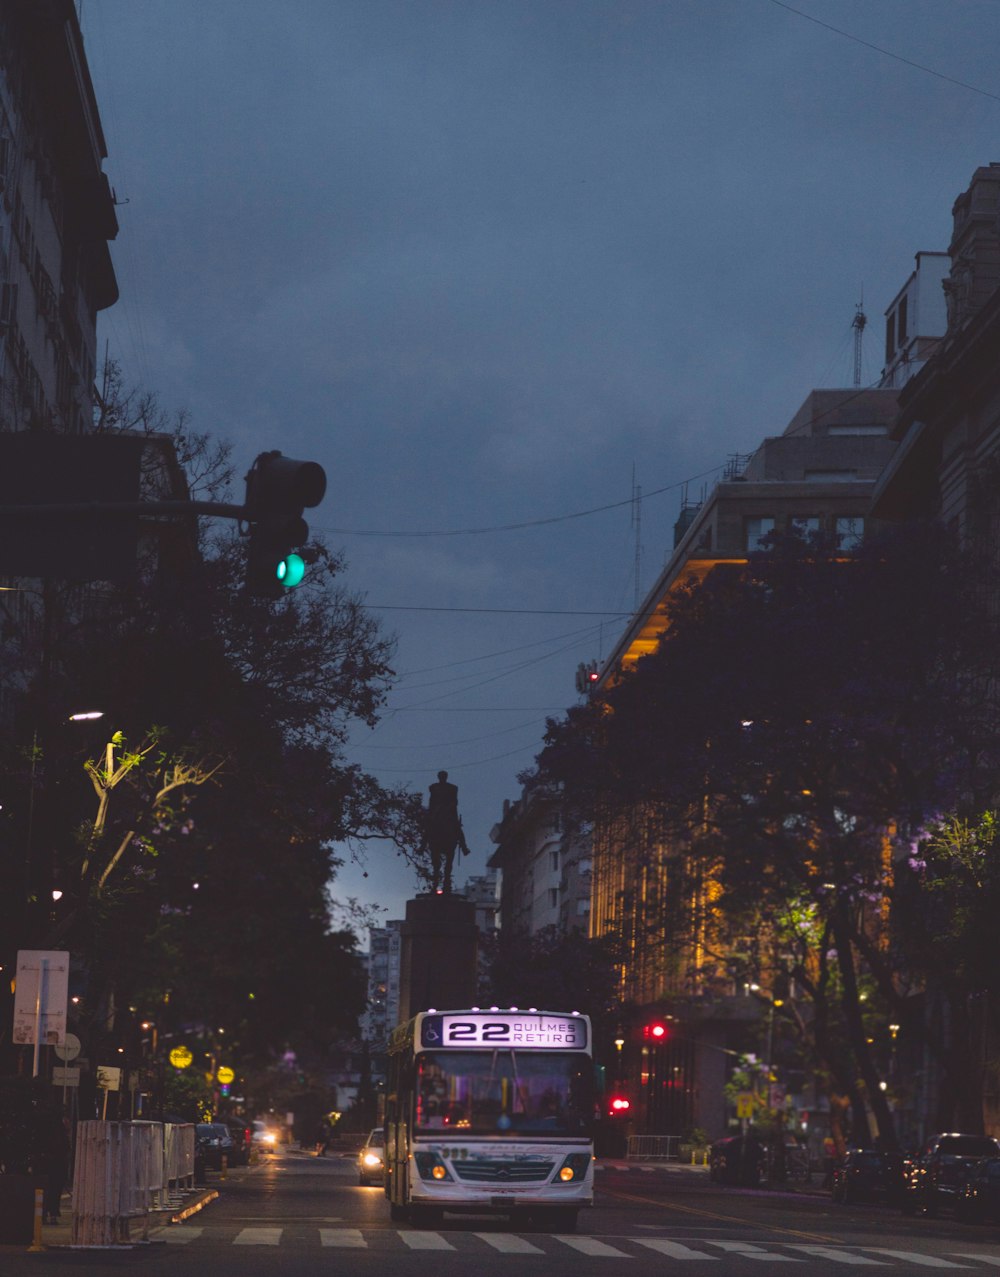 신호등과 버스가 있는 밤의 도시 거리